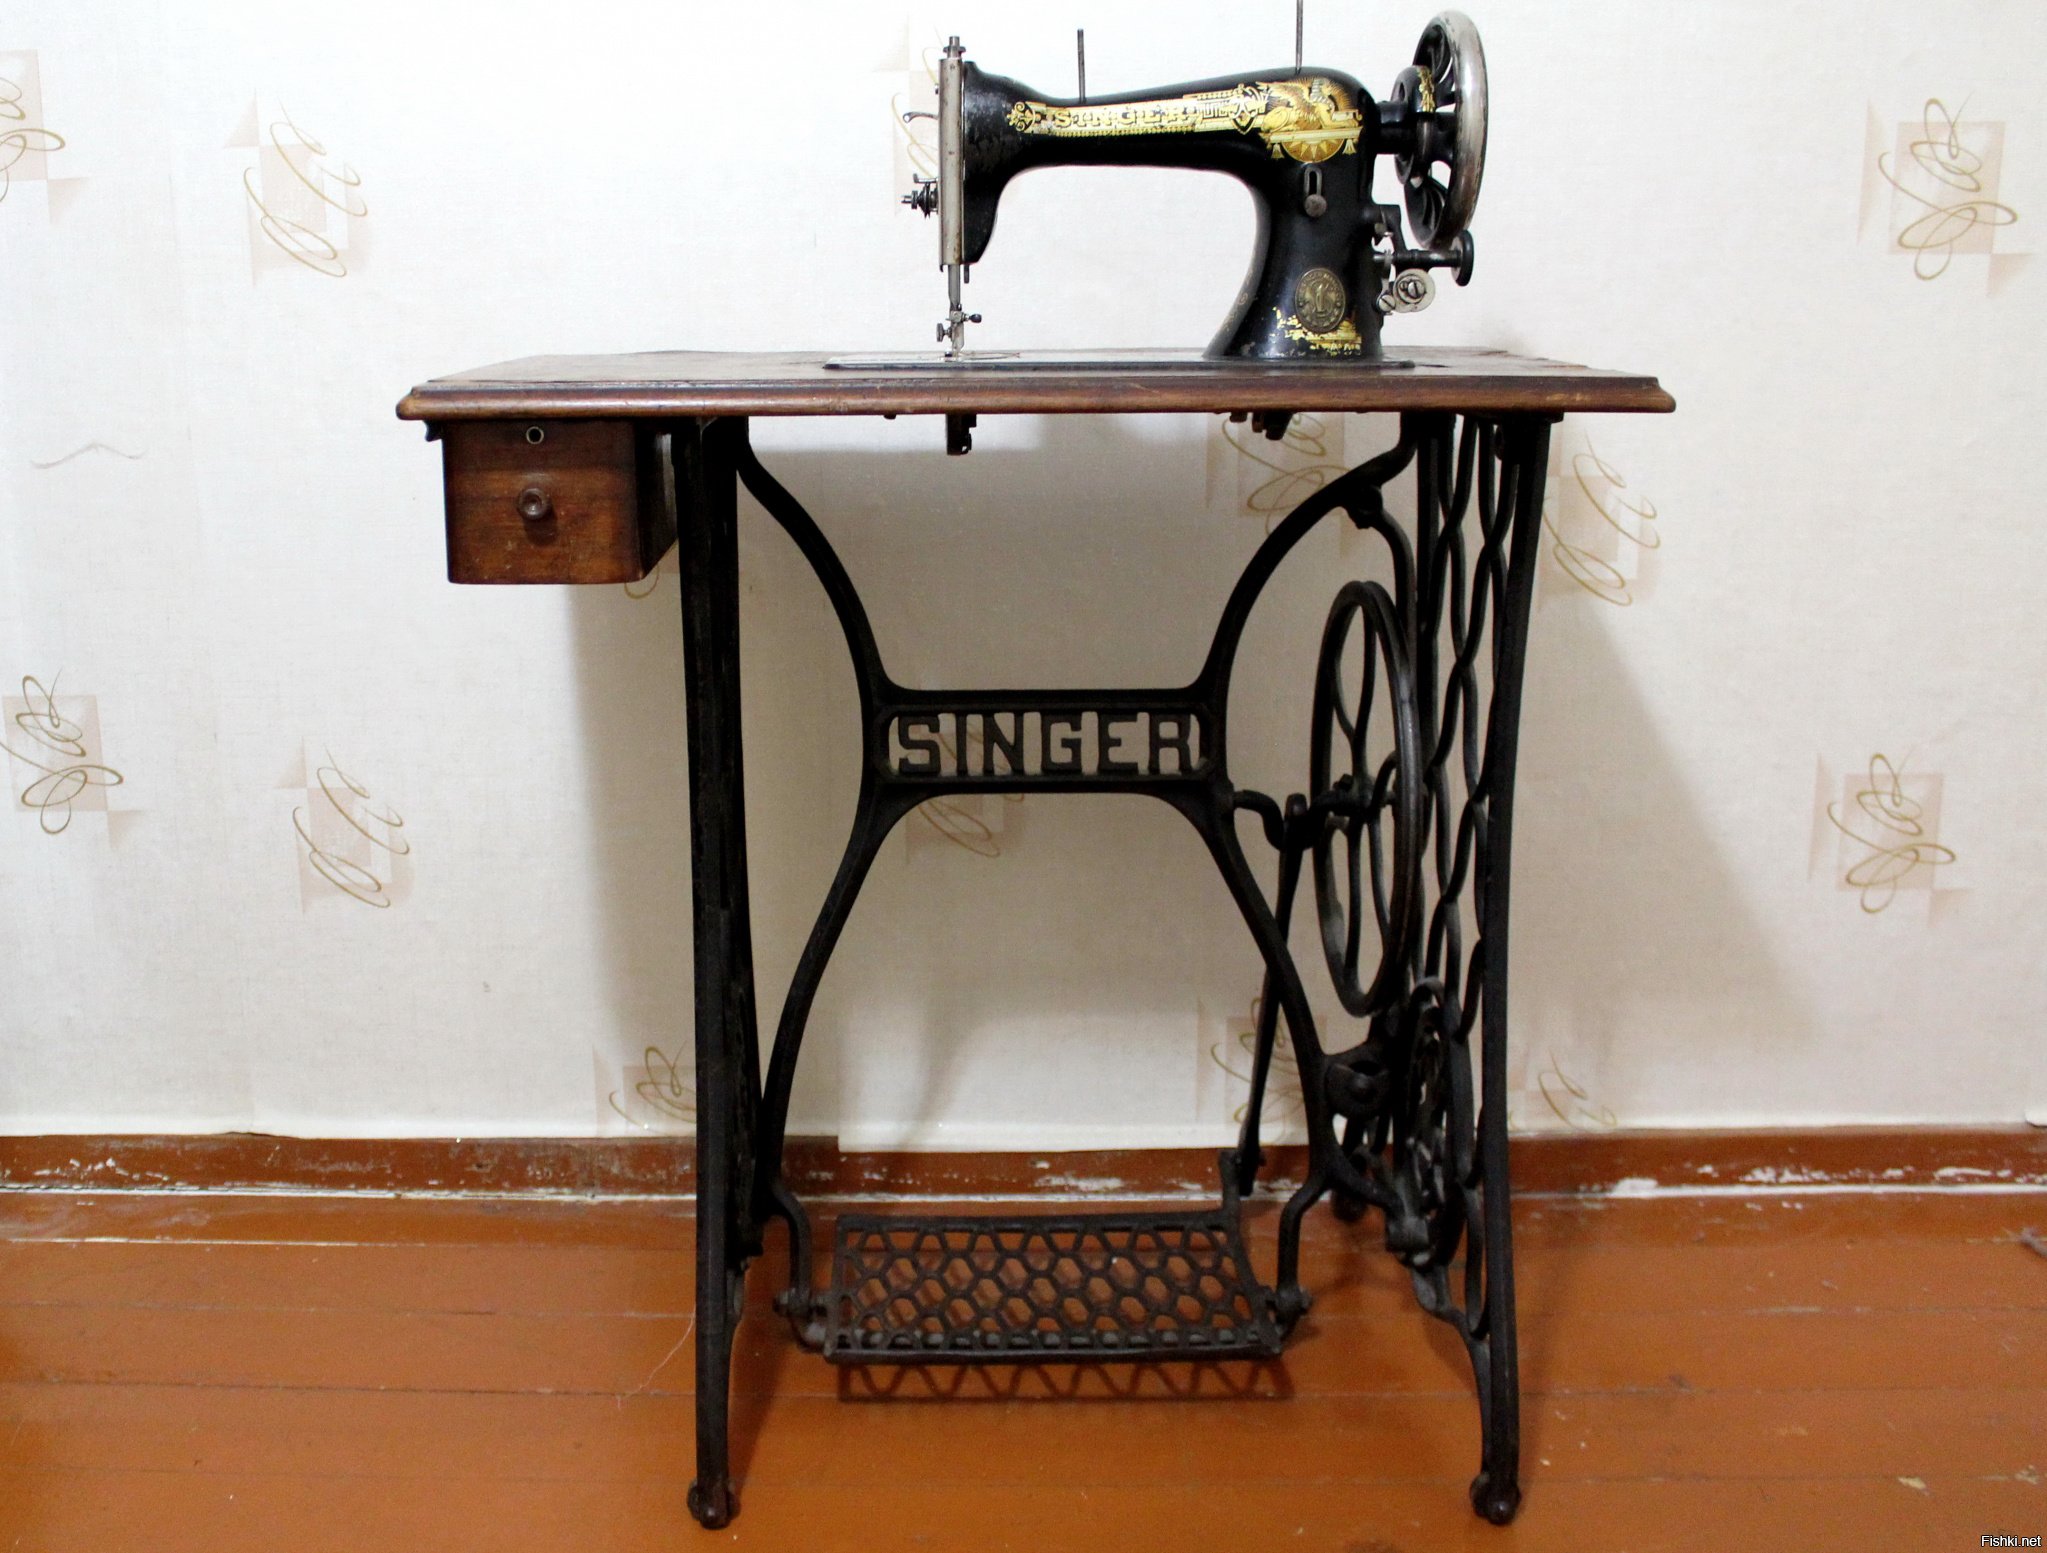 Машинка зингер новая. Швейная машинка (Zinger super 2001). Швейная машинка Зингер 1950 г. Zinger швейная машинка ножная. Машинка Зингер 2 швейная.